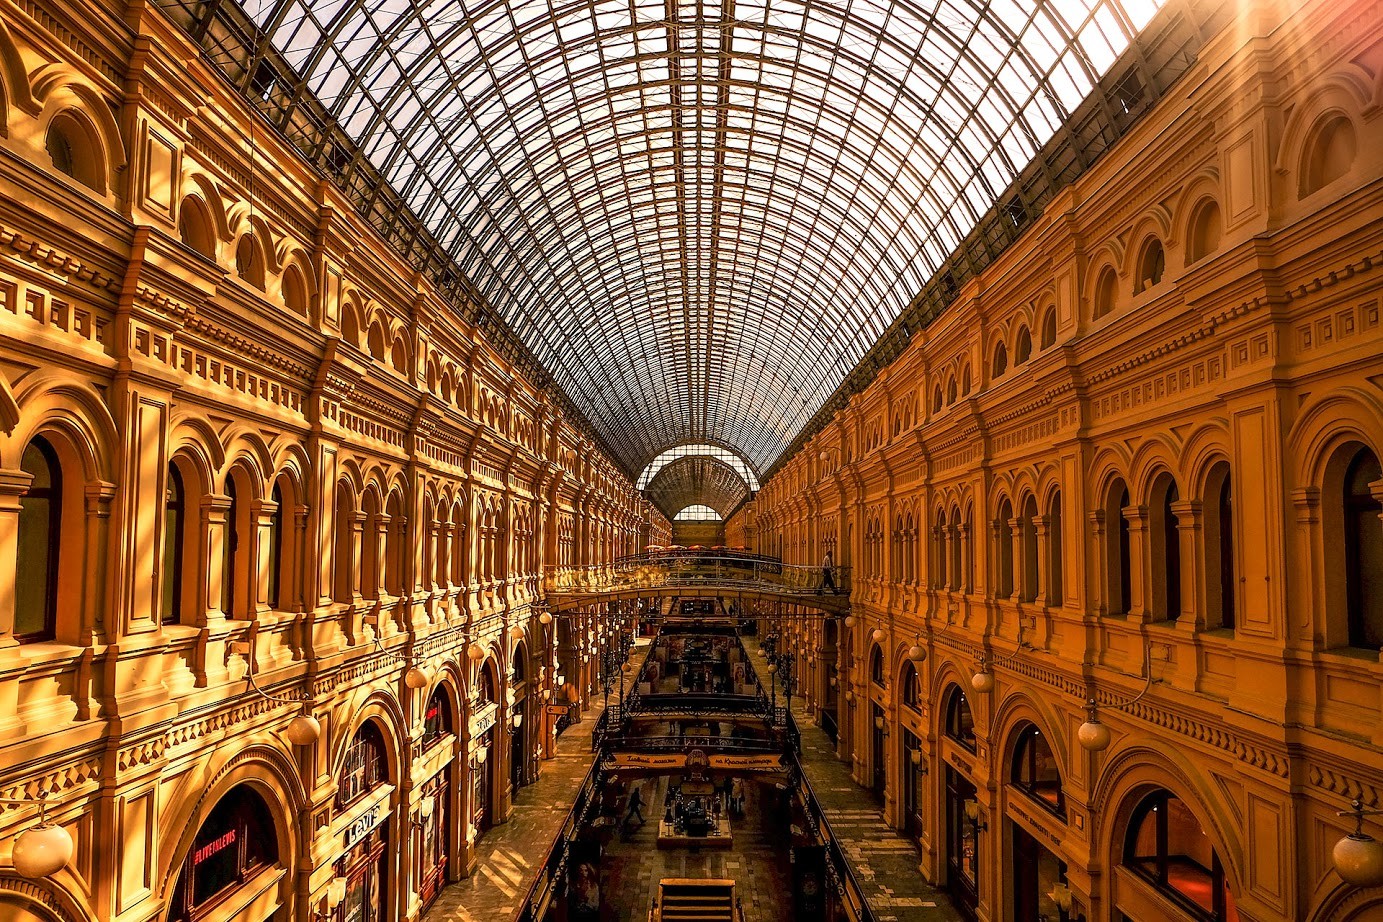 Streha veleblagovnice GUM, najlepšega nakupovalnega centra v Rusiji, ki ga je zasnoval Vladimir Šuhov.